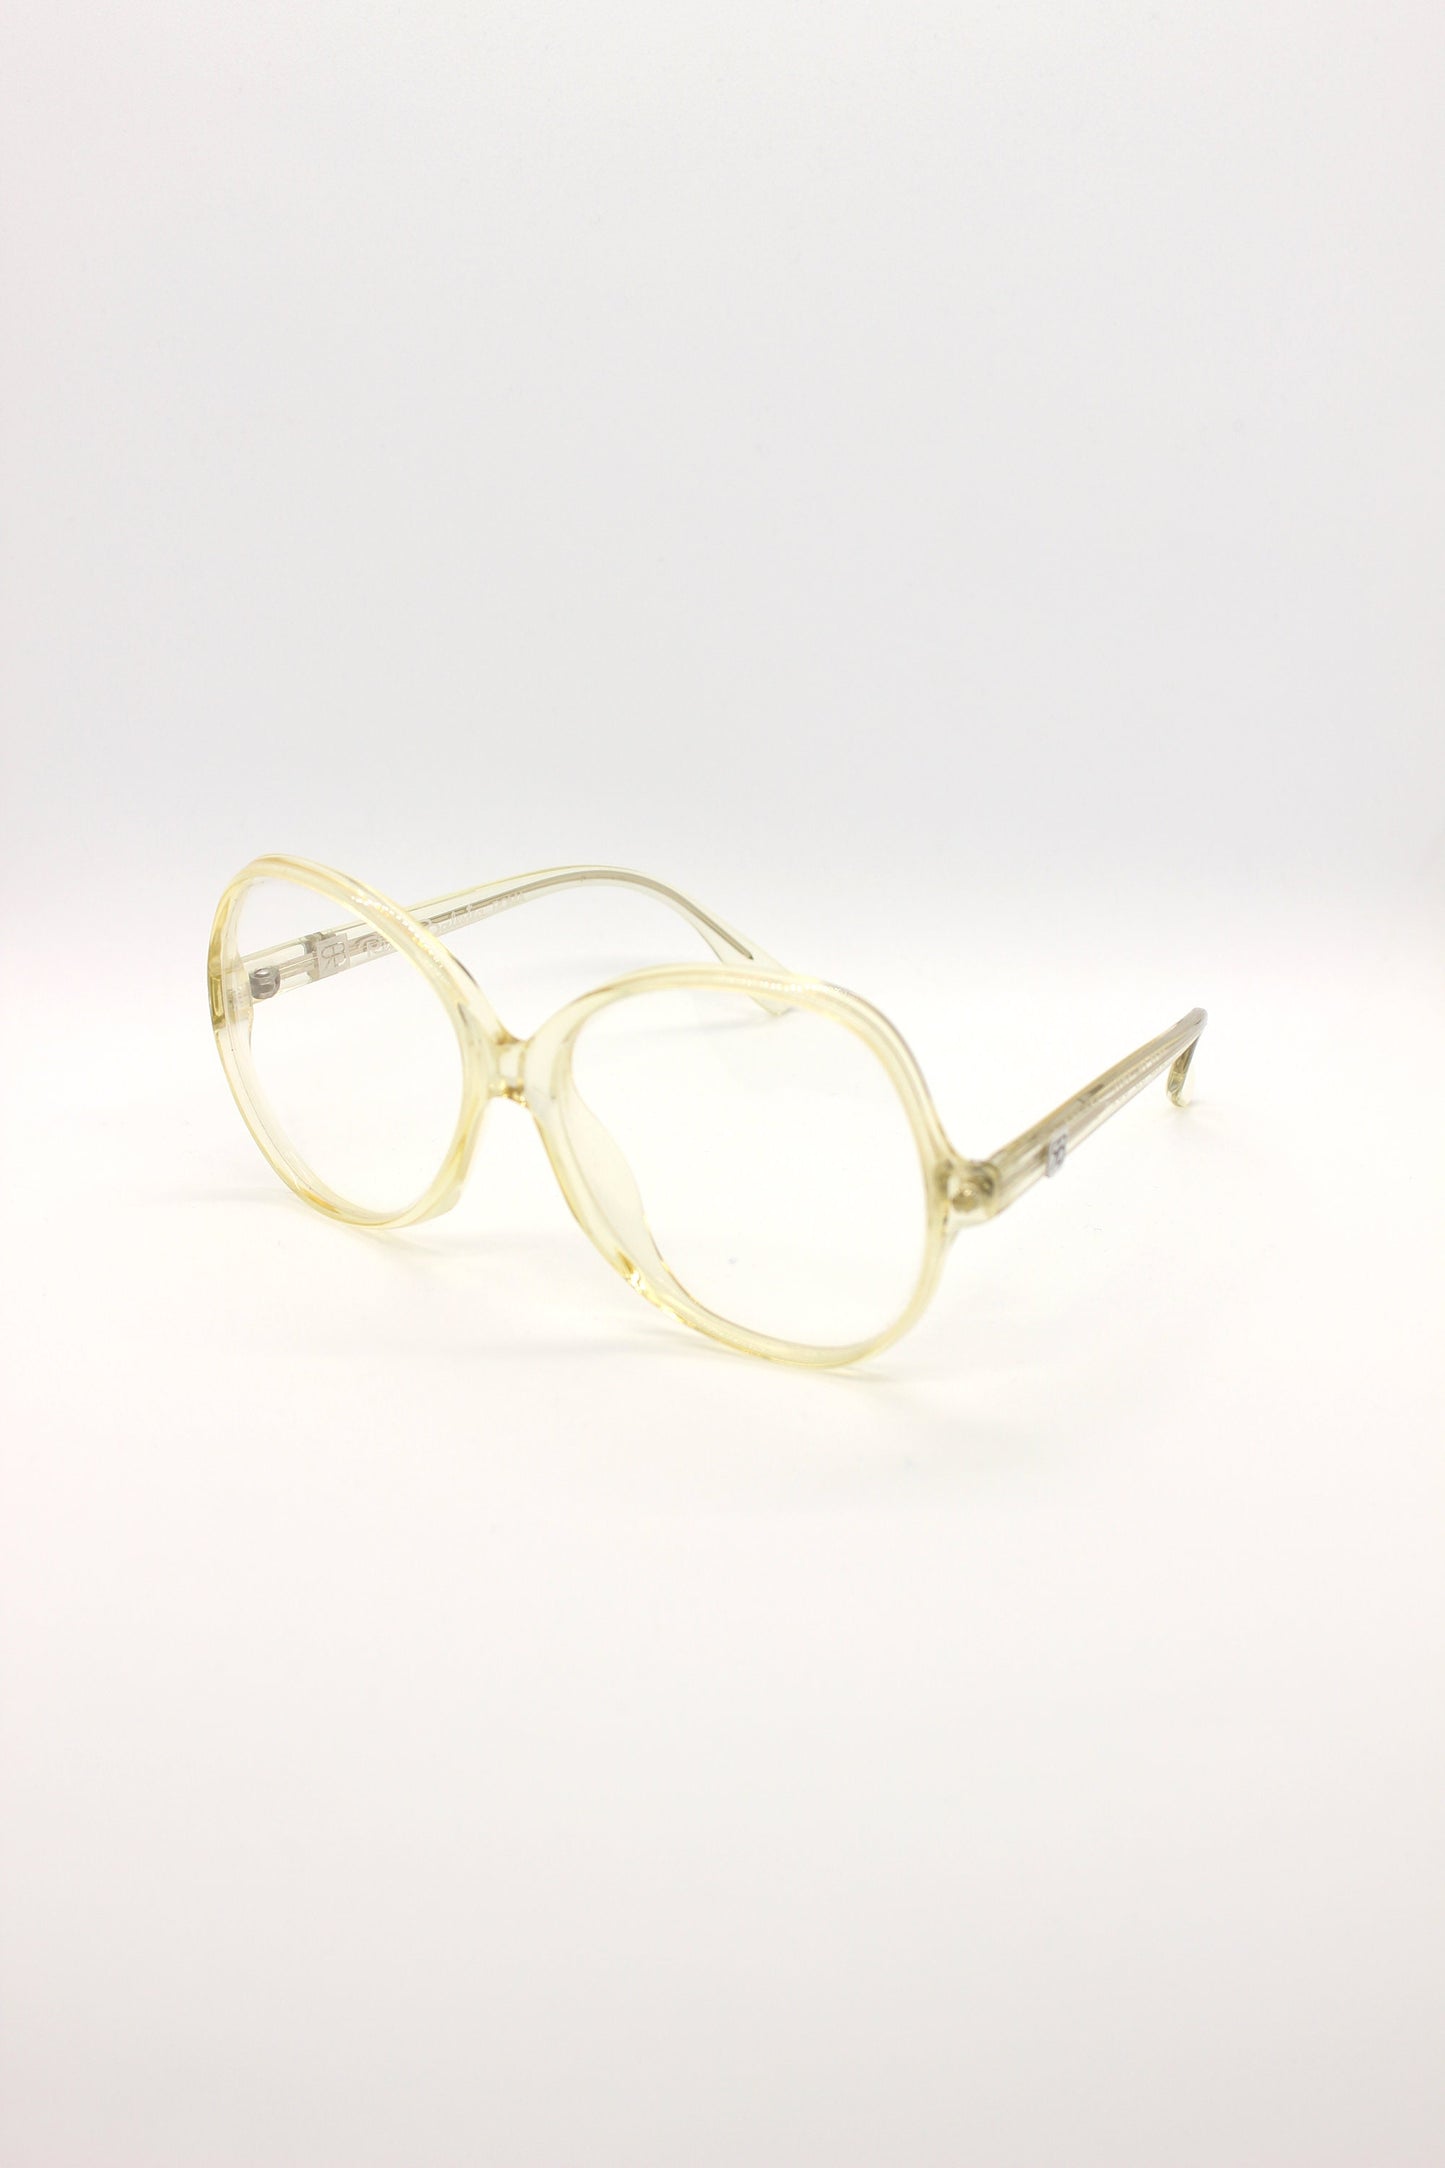 RENATO BALESTRA NOS Vintage New old stock eyeglasses frames. Mod. 06-001